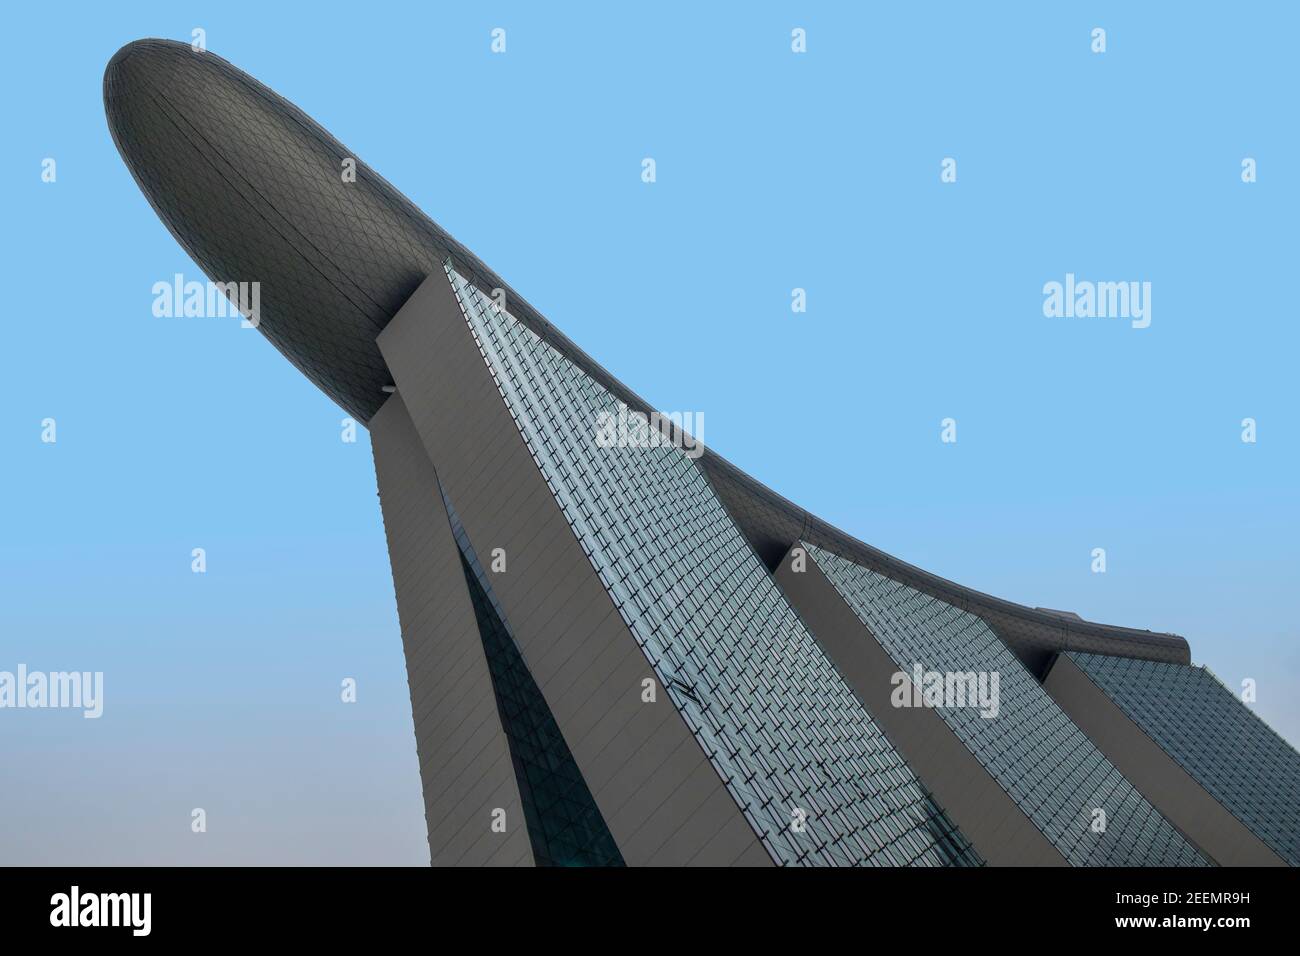 El Marina Bay Sands Hotel, Singapur, desde abajo, mostrando la forma de barco de proyección de la cubierta superior contra un cielo azul claro, con espacio de copia Foto de stock